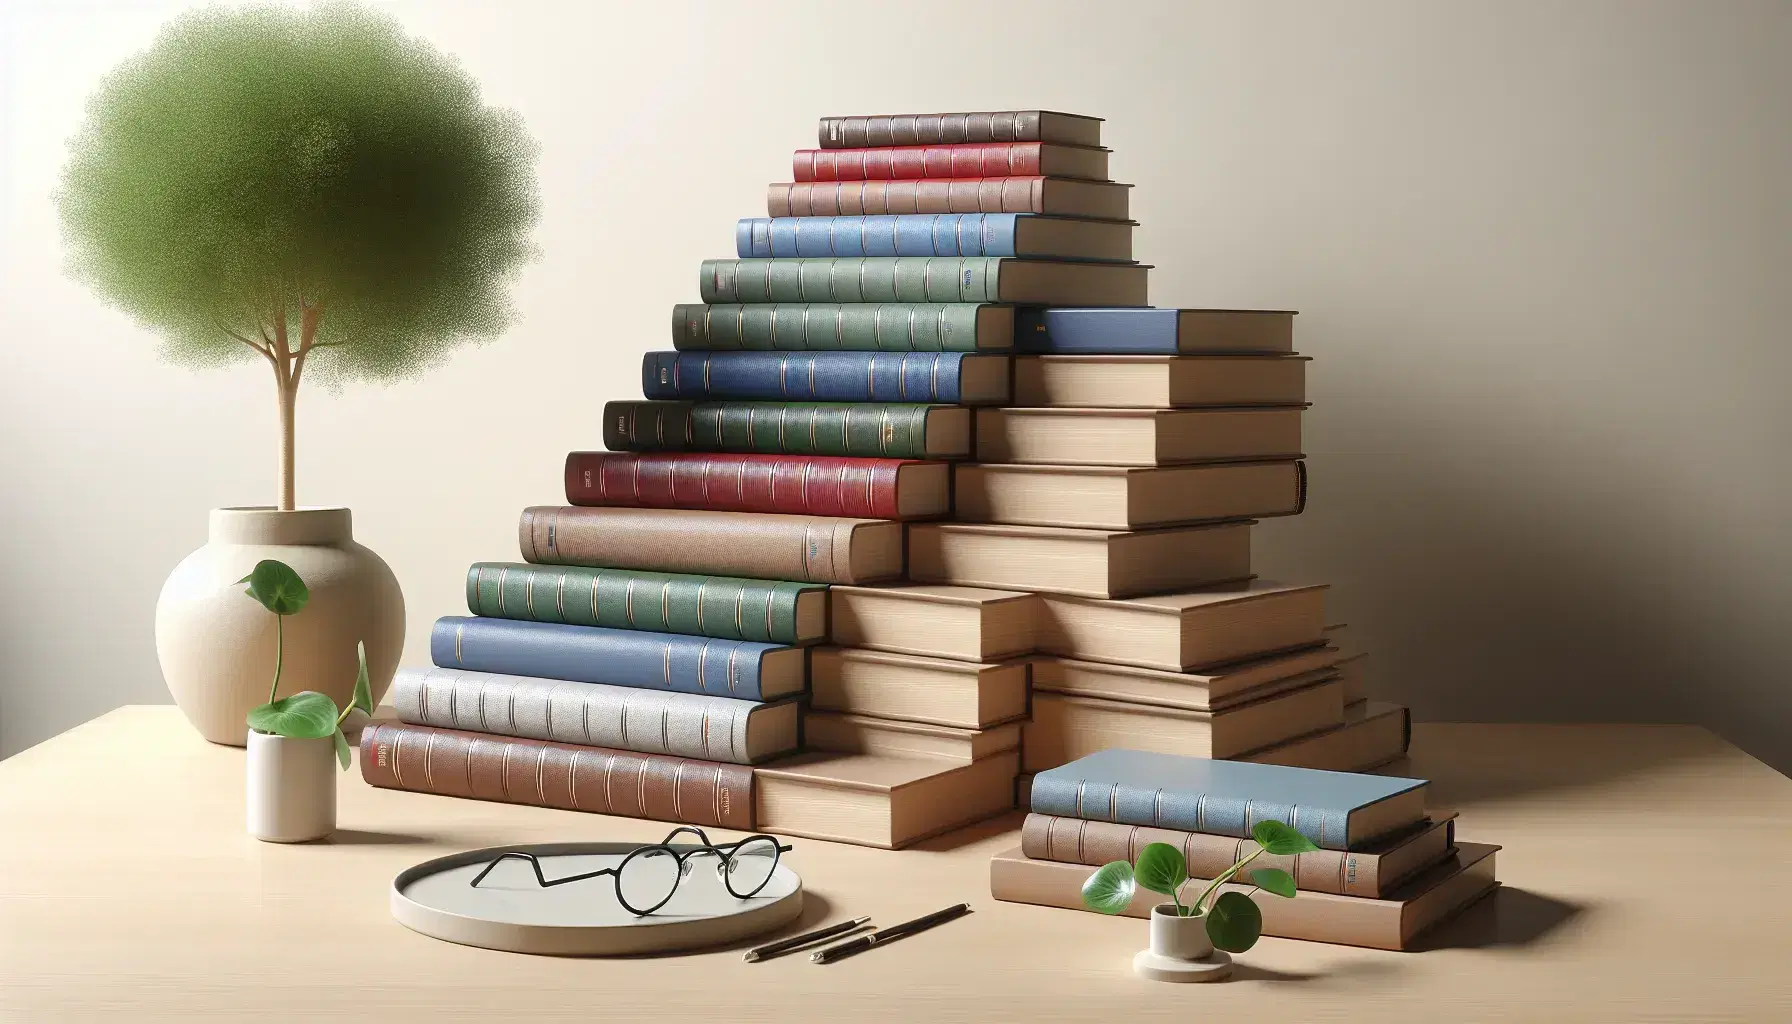 Pila de libros en colores variados ordenados en escalera sobre mesa de madera clara, junto a gafas negras y planta verde en maceta blanca.